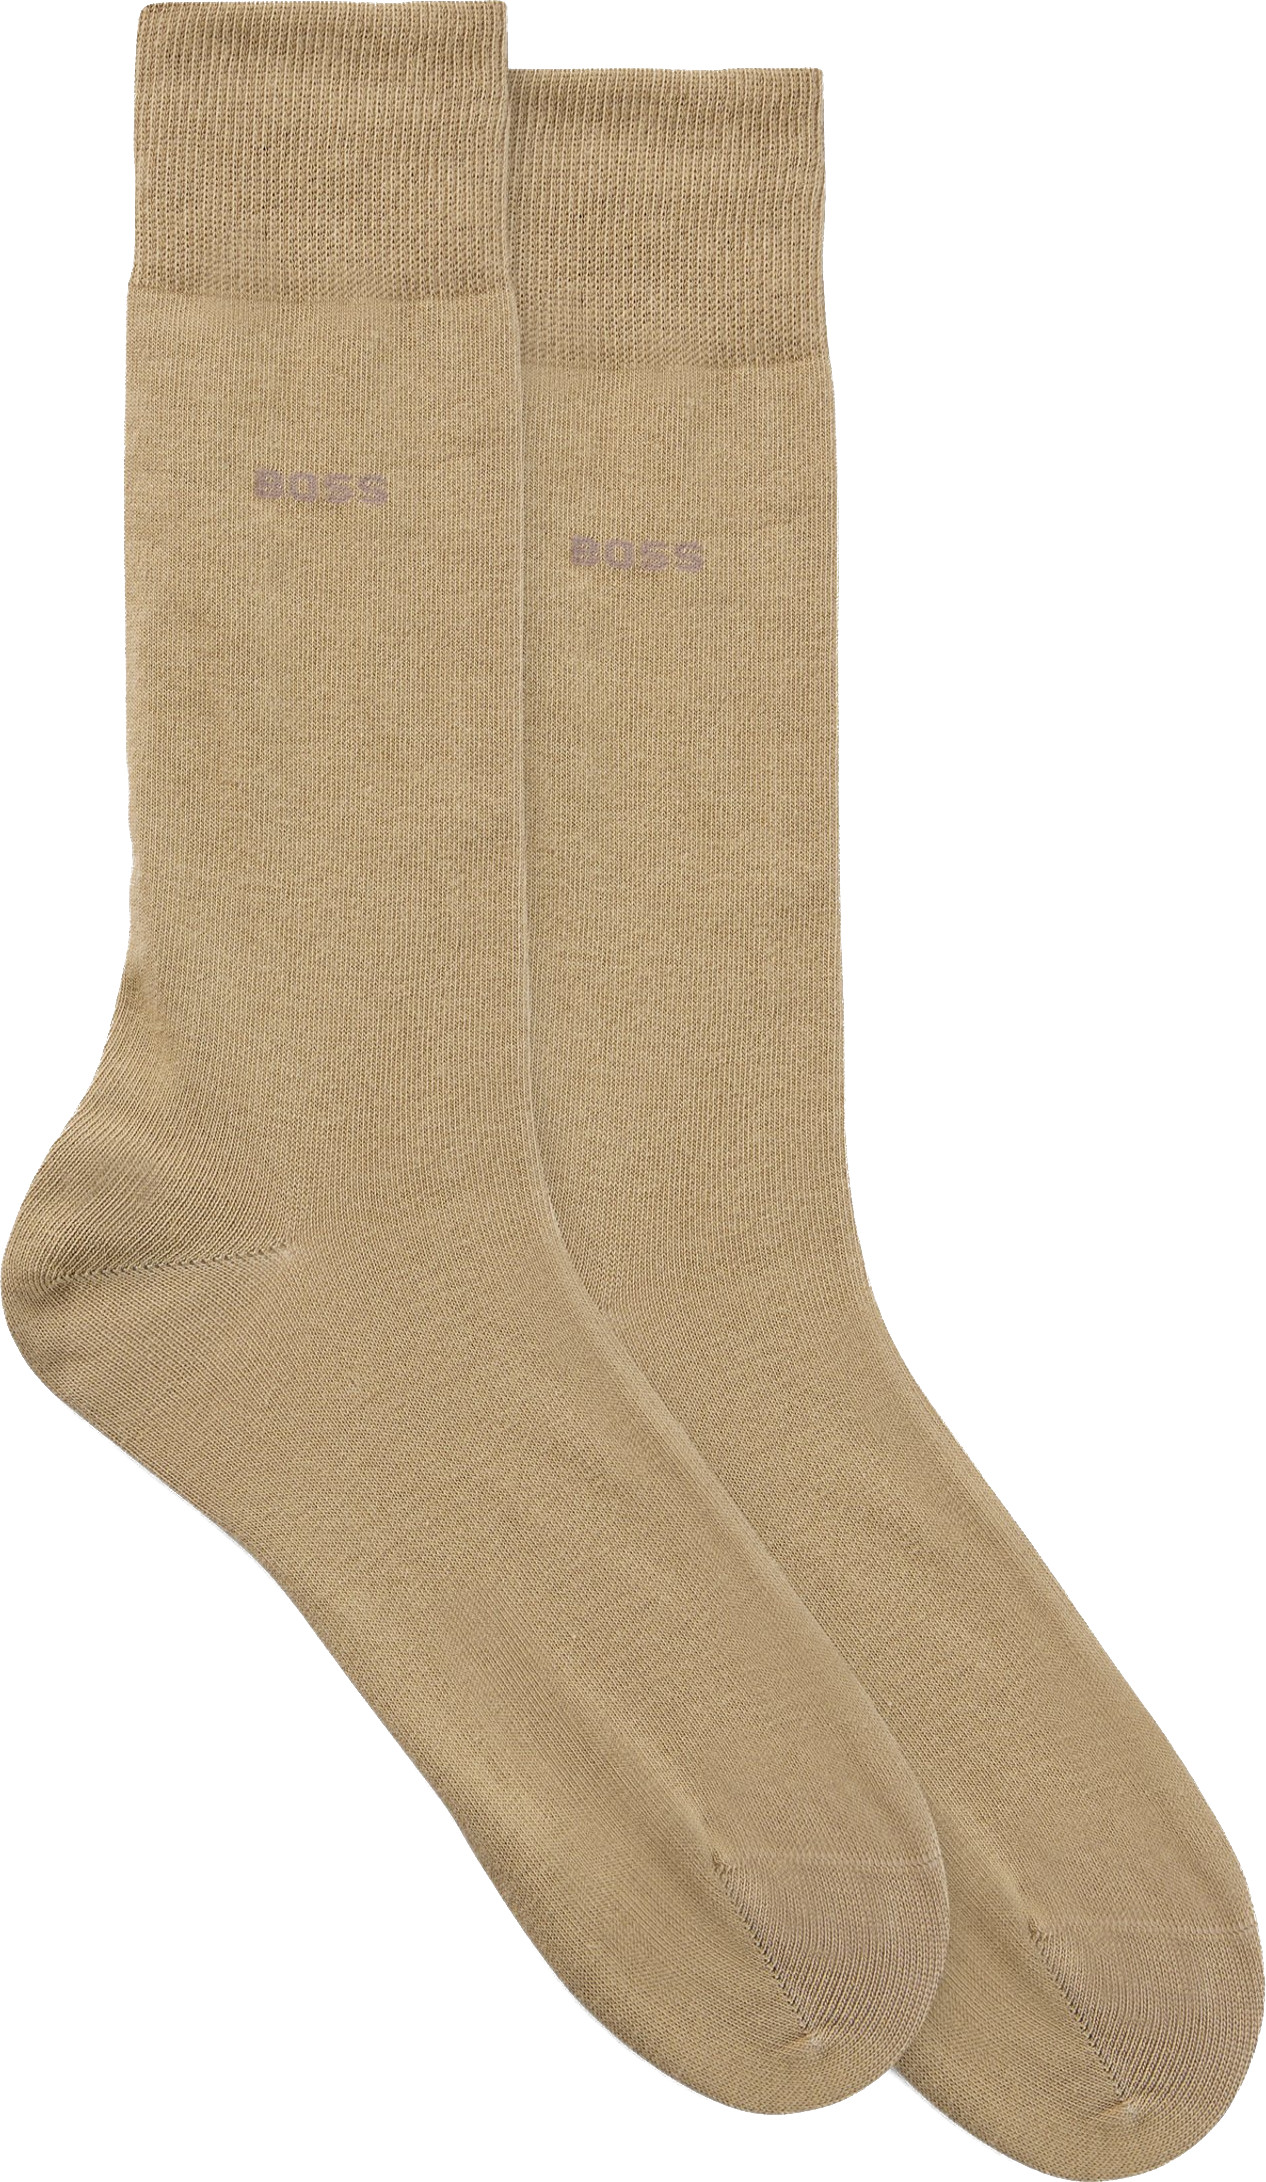 Hugo Boss 2 PACK - pánské ponožky BOSS 50516616-261 43-46